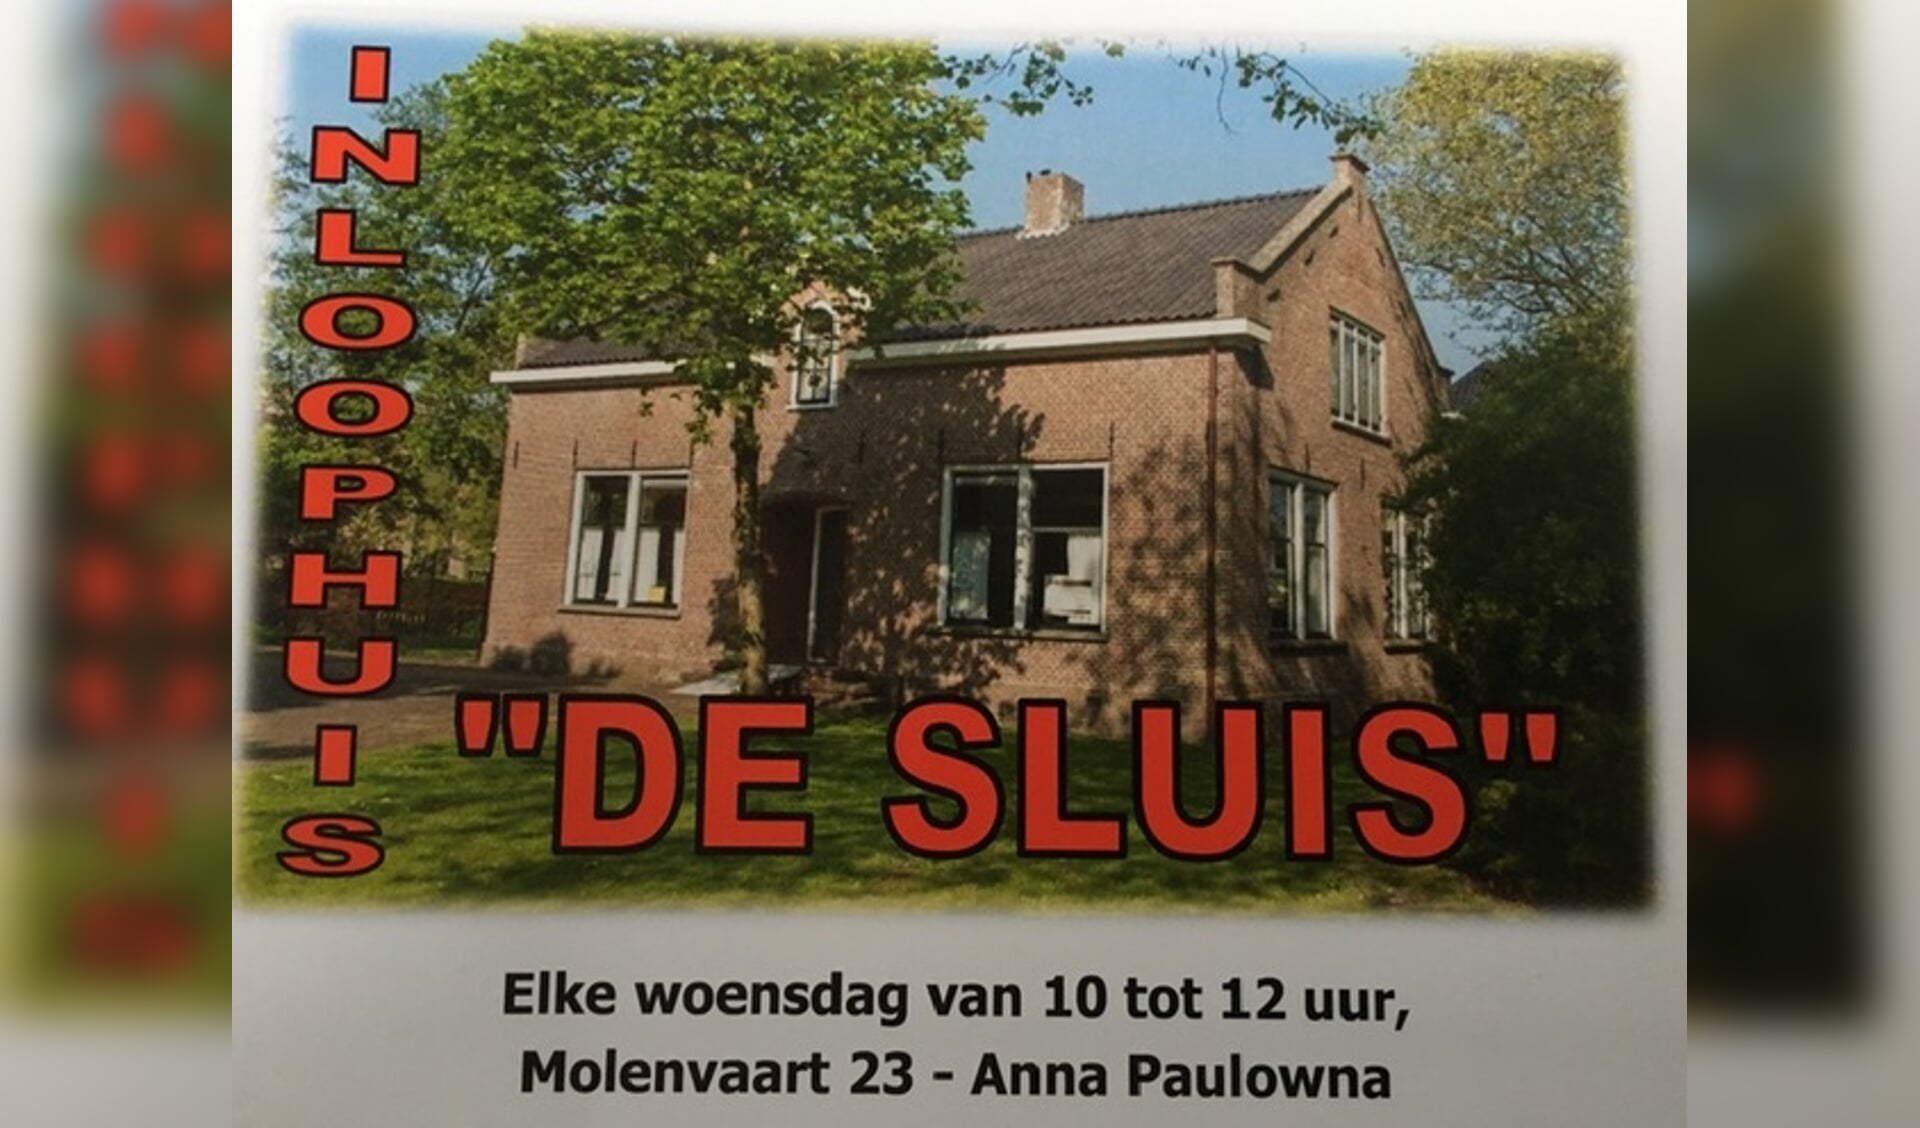  Inloophuis de Sluis aan de Molenvaart 23 is een huiskamer.